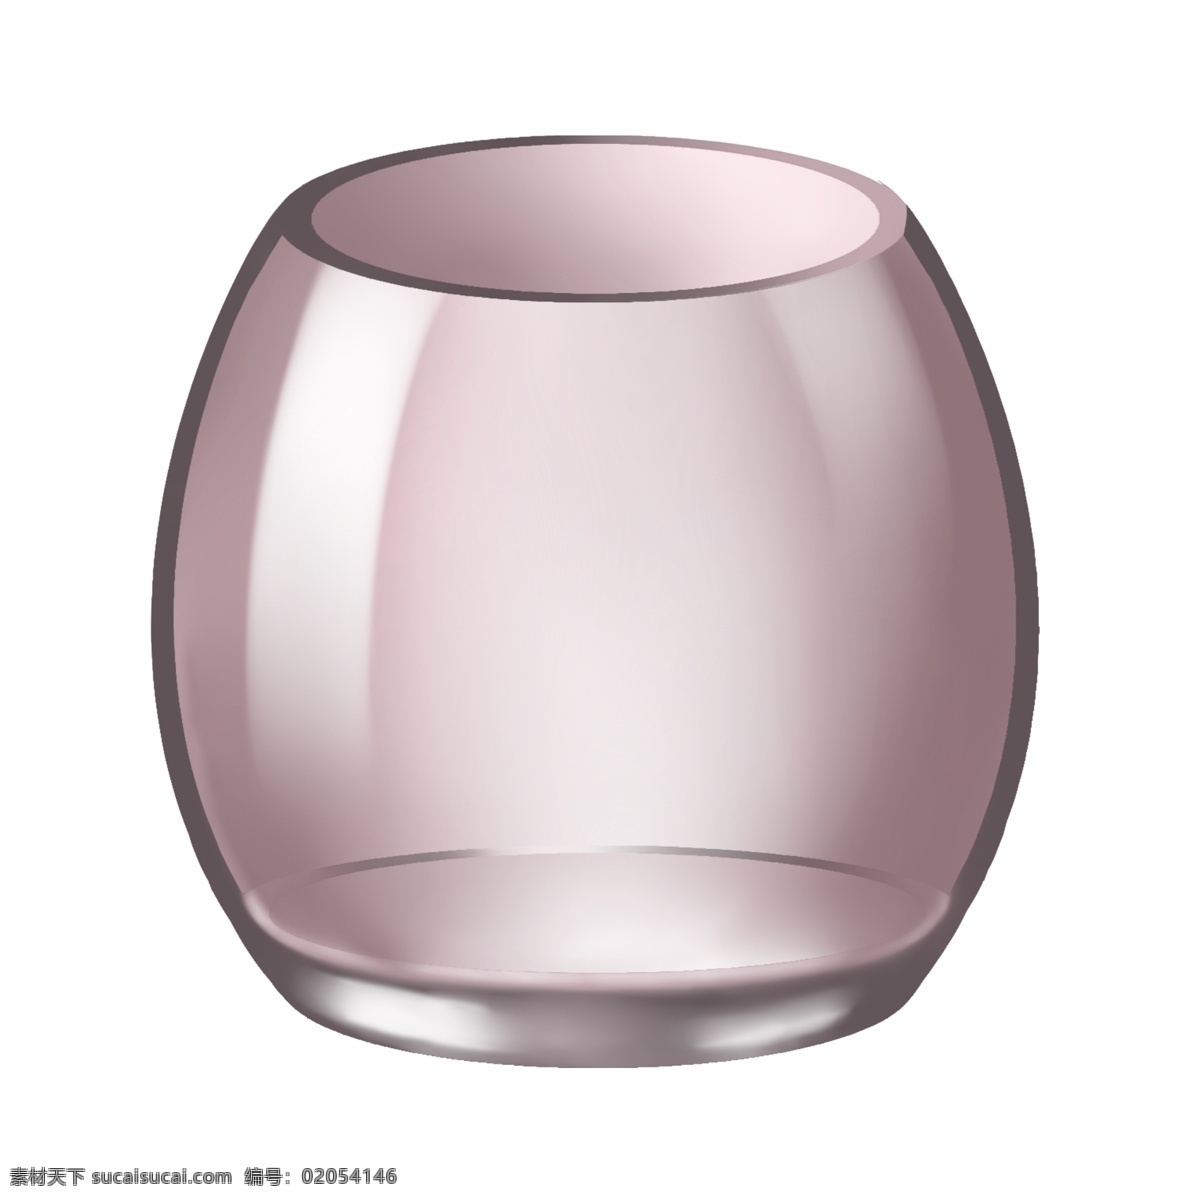 粉色 玻璃 罐子 插图 玻璃罐子 圆形玻璃 透明的罐子 卡通插画 罐子插画 容器 气血 玻璃瓶子 装饰品